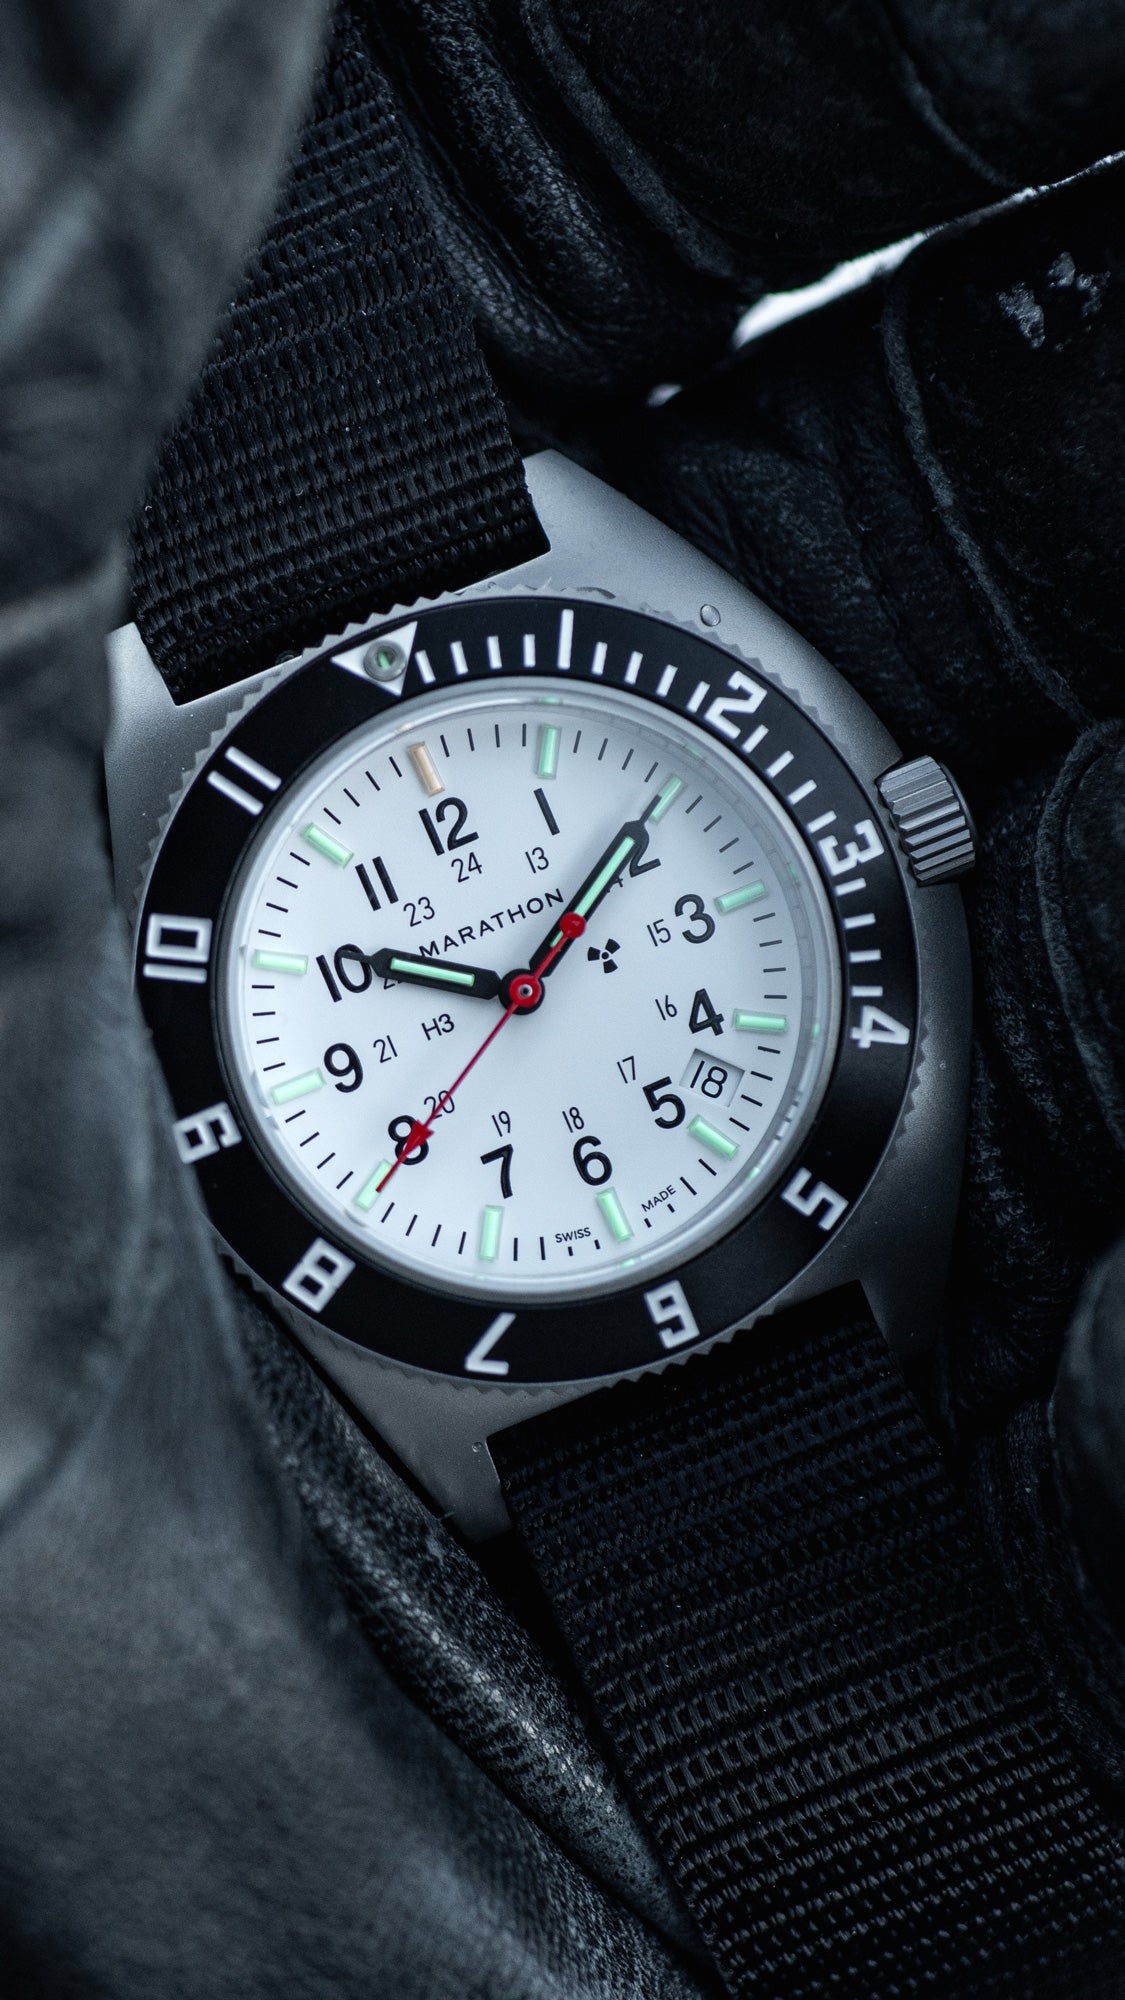 Marathon Watch Company - Relojes militares auténticos fabricados en Suiza